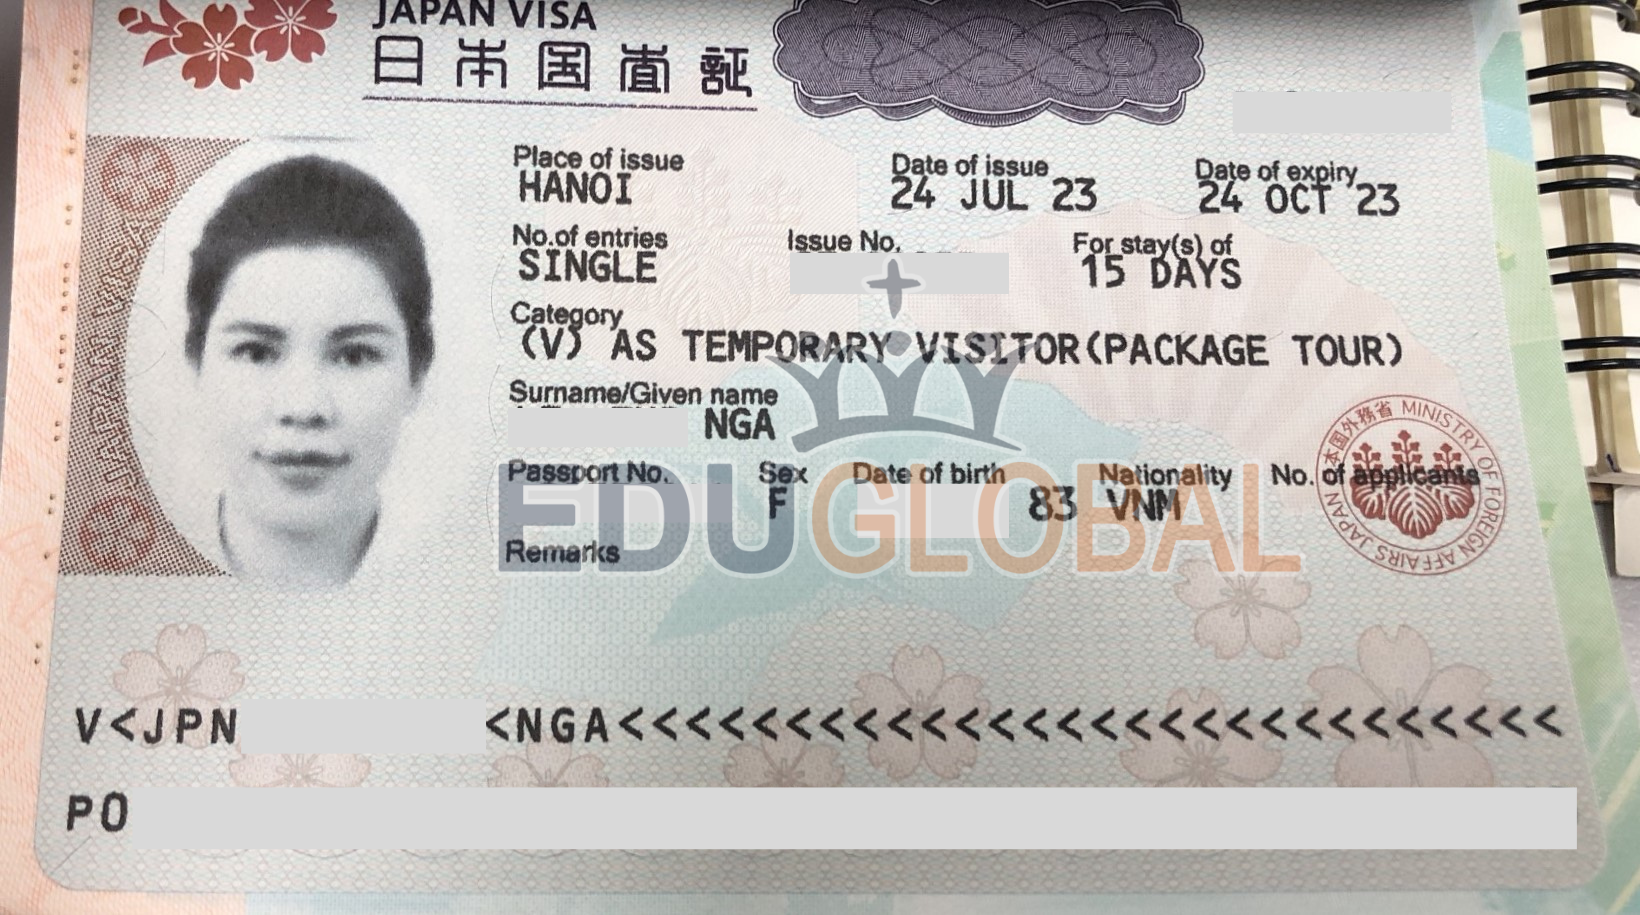 Xử lý thành công Visa du lịch Nhật Bản cho chị Ngà